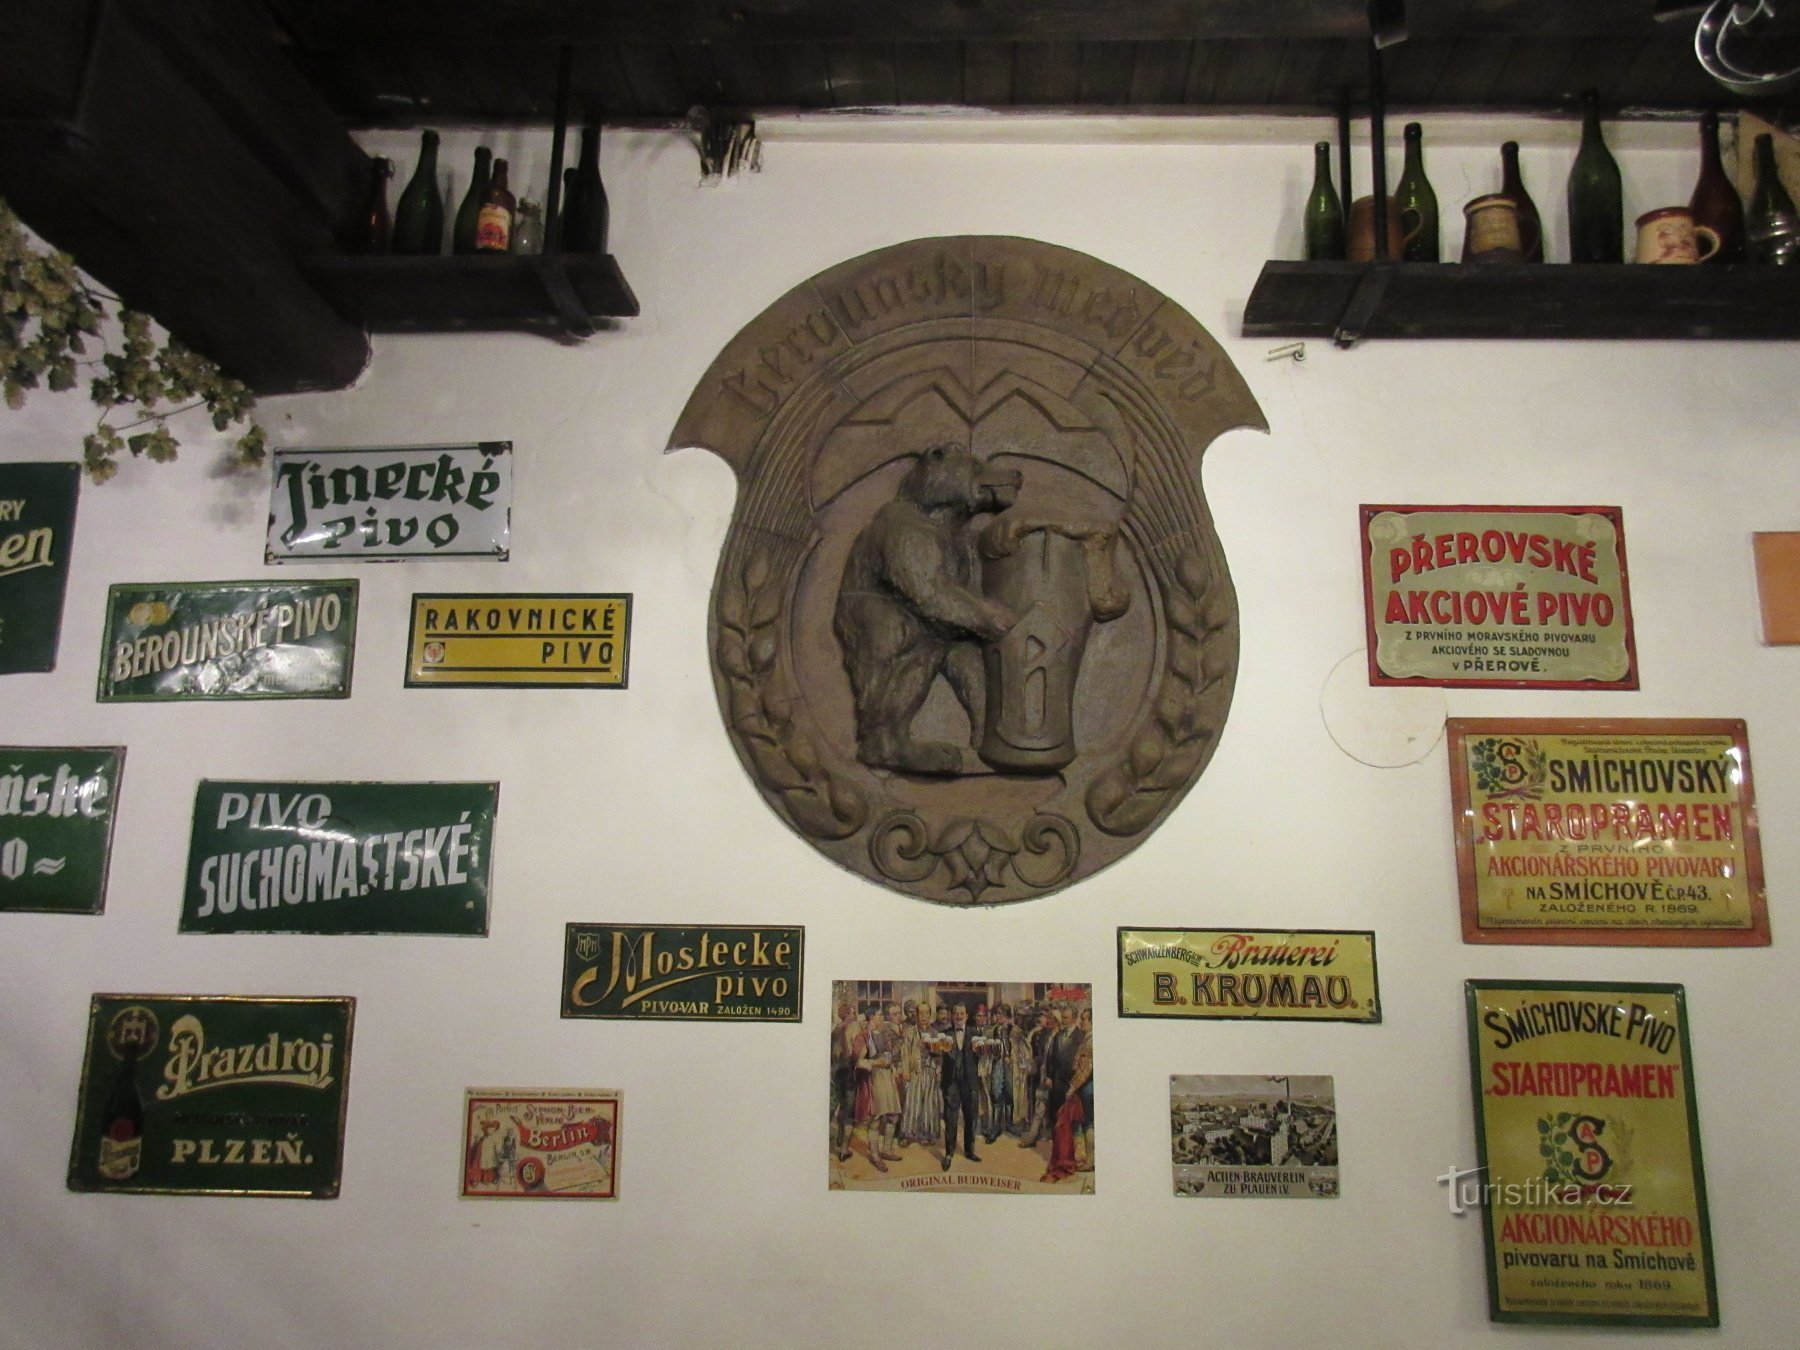 La storia della produzione di birra a Beroun e il birrificio di famiglia Berounský medvěd